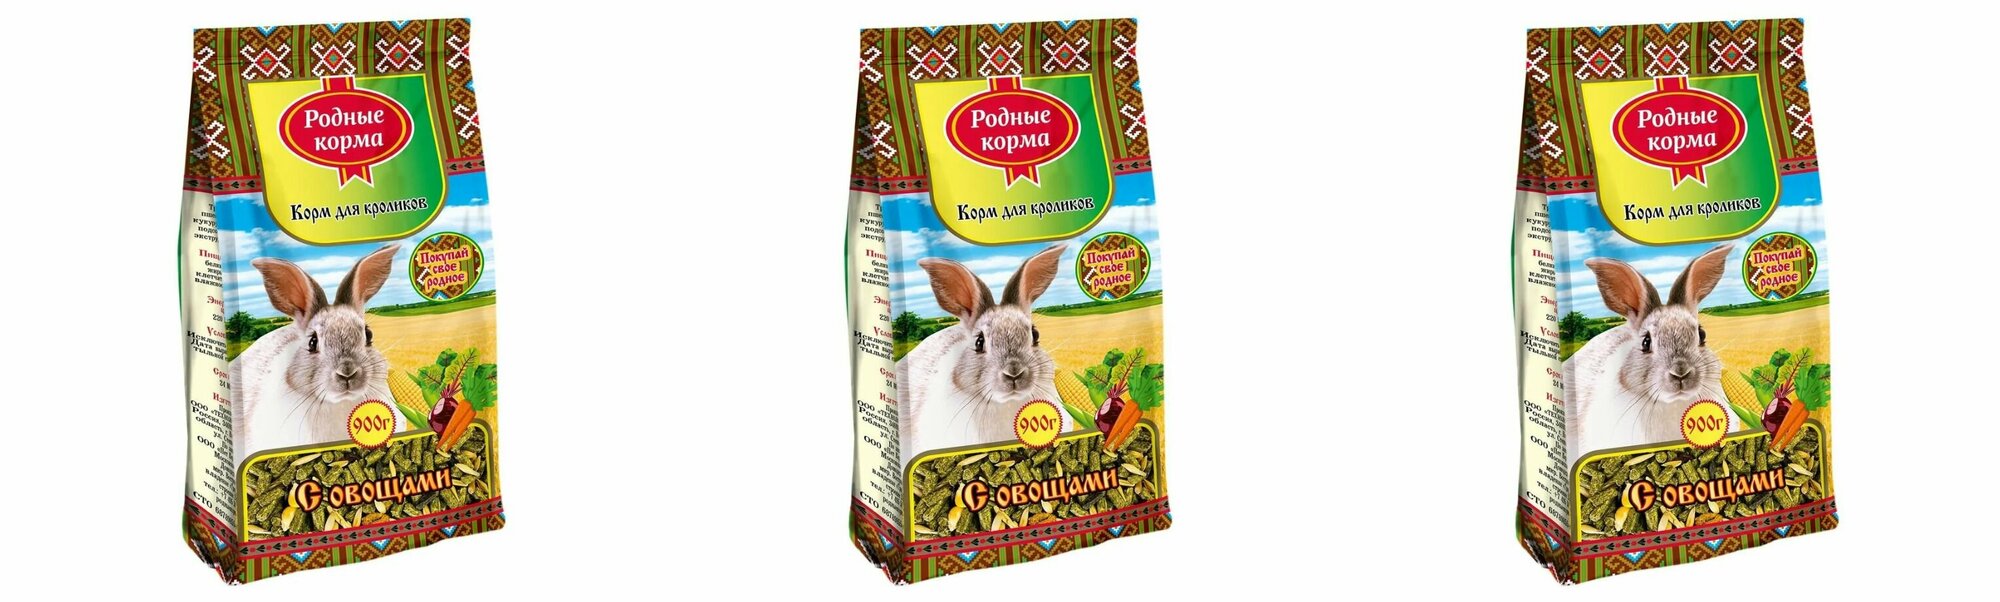 Родные корма корм для кроликов с овощами,900 г,3 шт